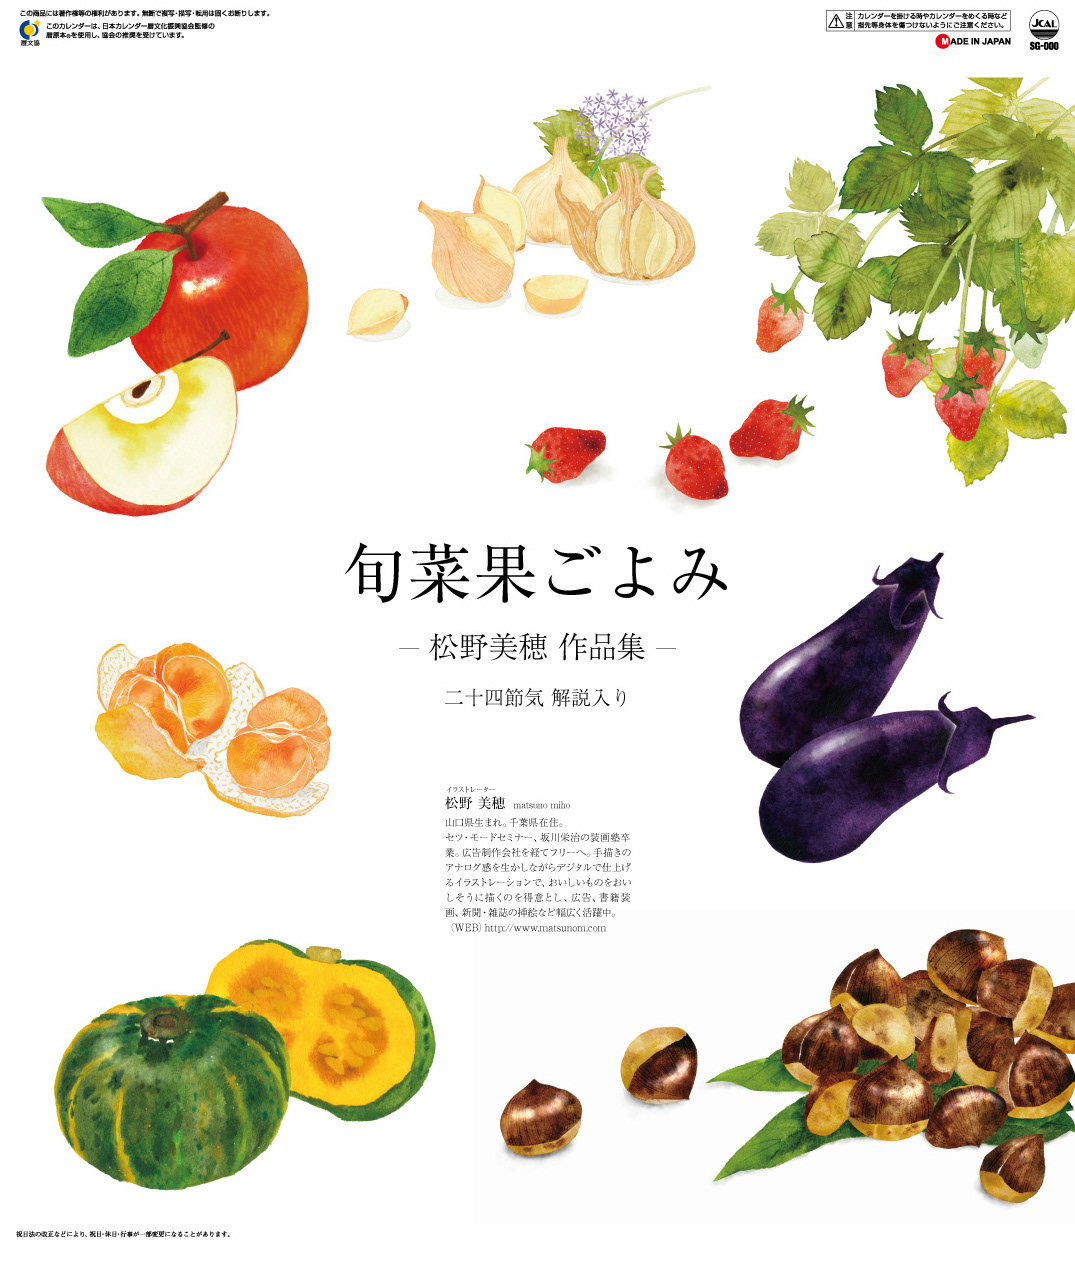 calendar ILLUSTRATION  food illustration fruits Fruit Illustration seasonal japanese food calendar design fooddesign vagetables  